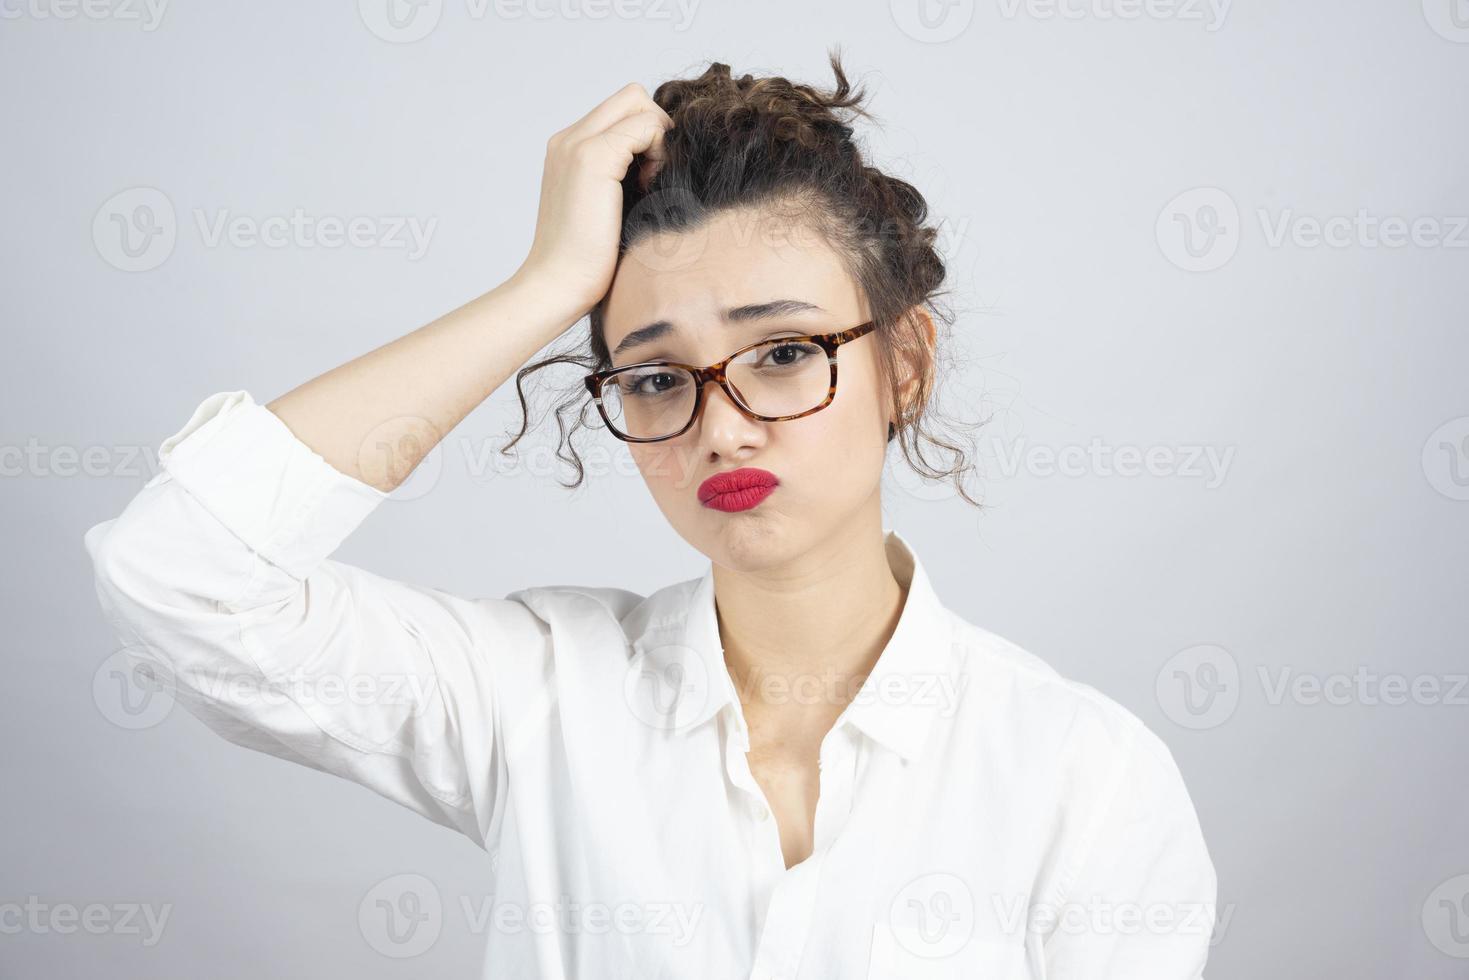 foto di una giovane donna dai capelli ricci con gli occhiali in posa per la fotocamera